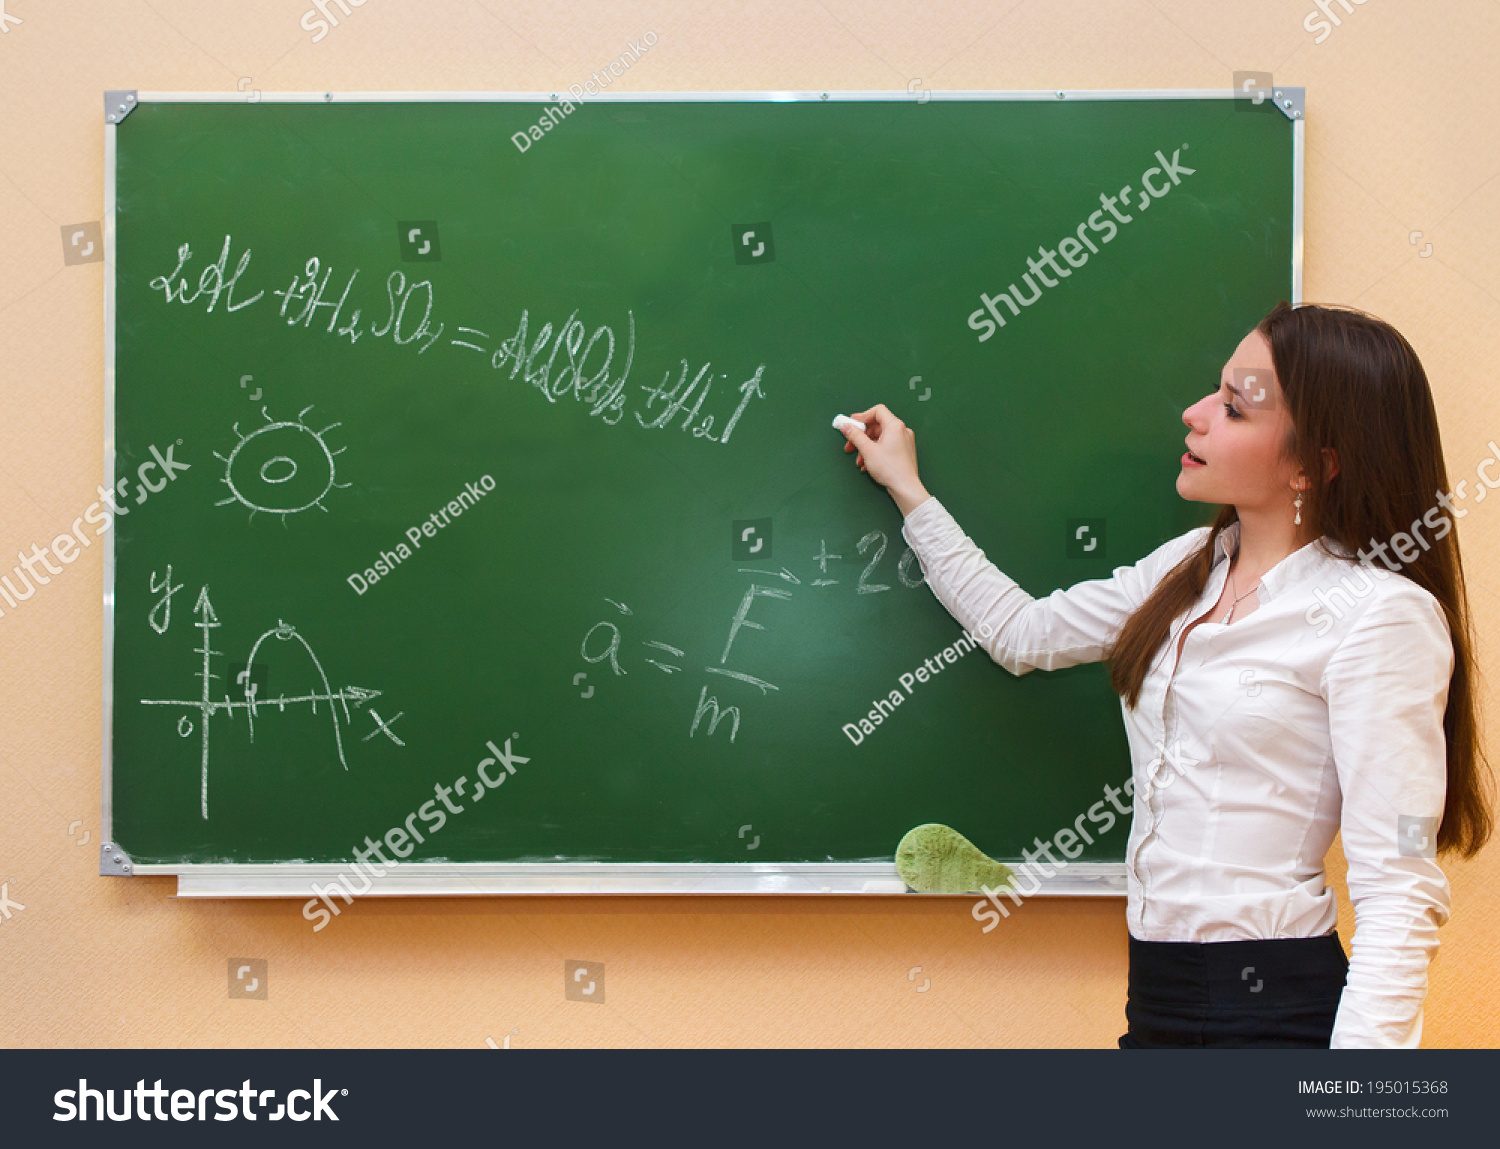 Доска преподавателей. Учитель пишет на доске. Девушка возле доски. Учитель с мелом у доски. Учительница возле доски.